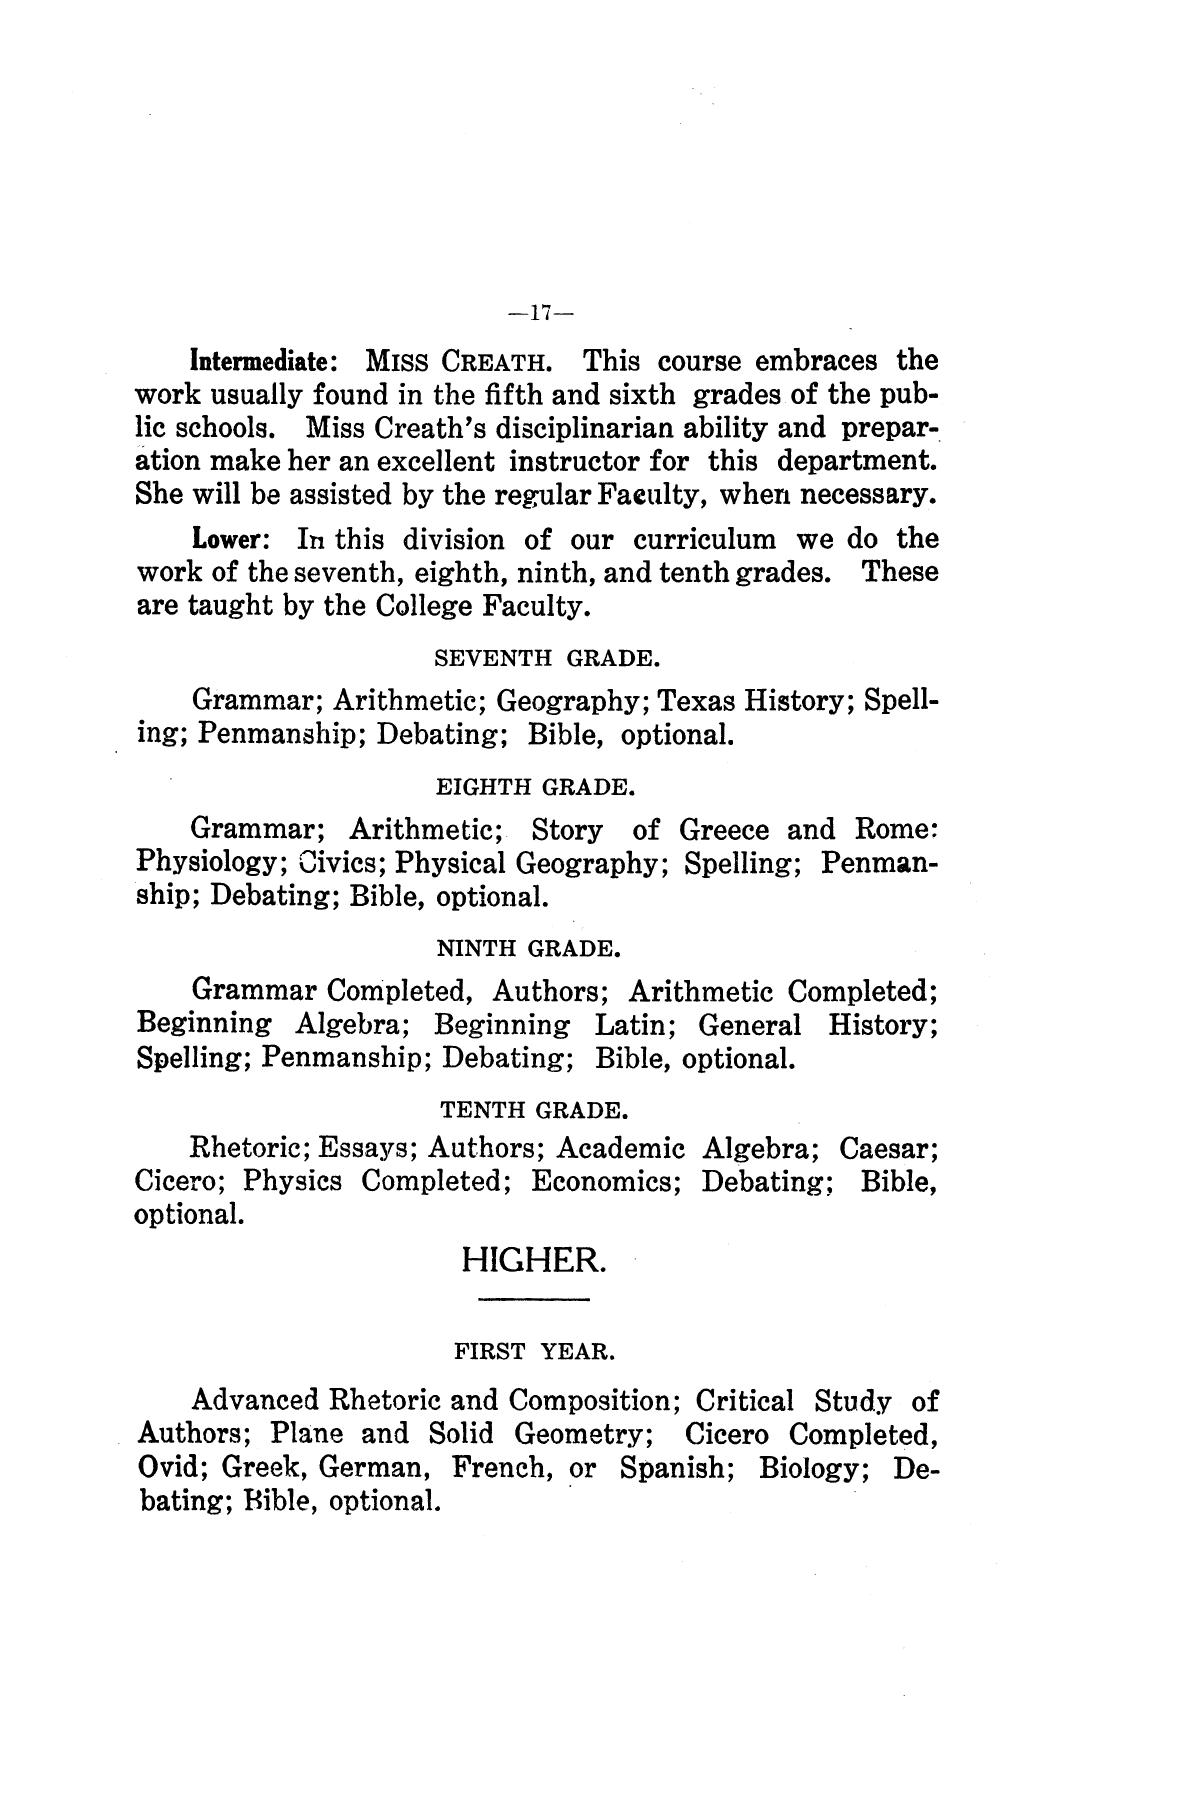 Catalog of Abilene Christian College, 1906-1907
                                                
                                                    17
                                                